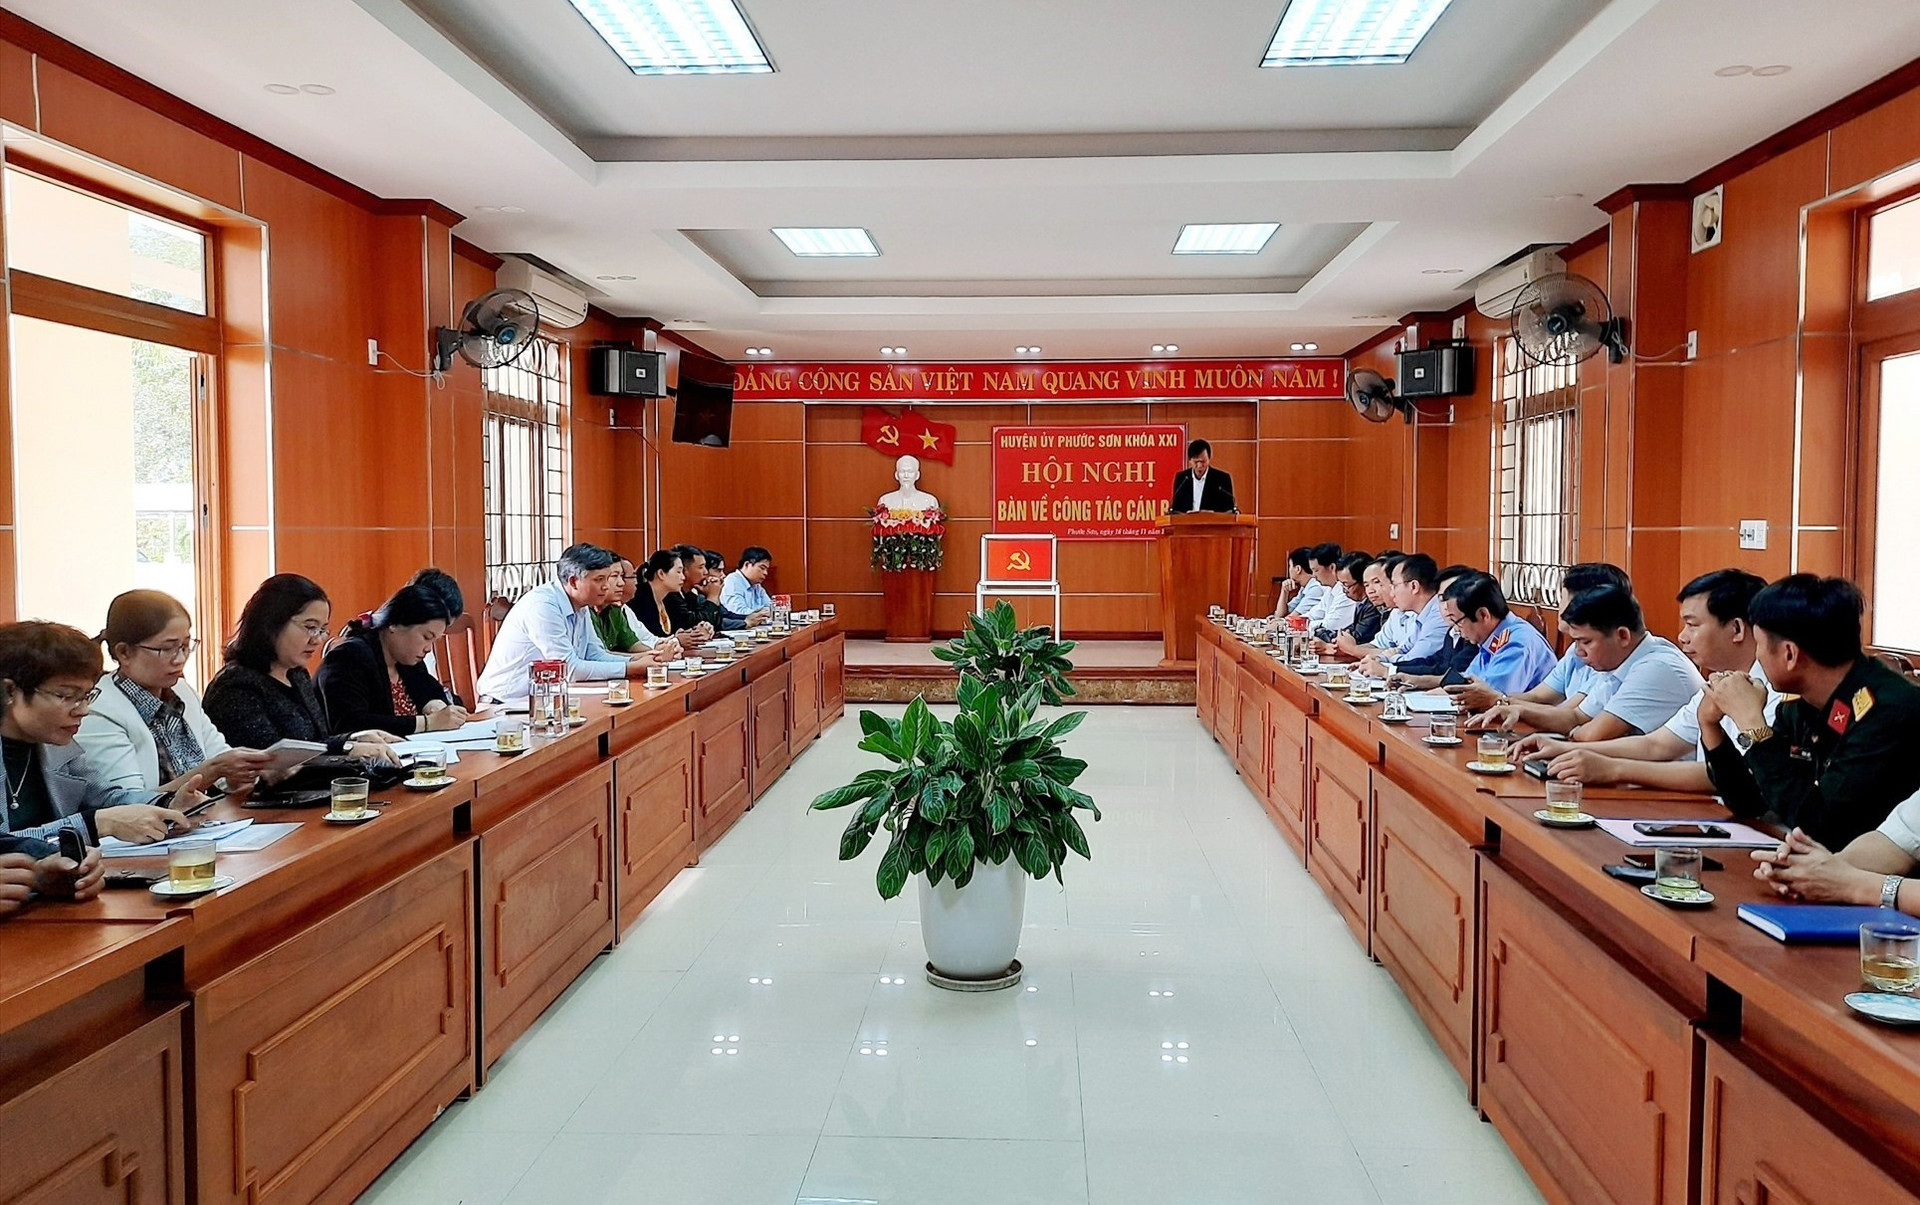 Huyện ủy Phước Sơn tổ chức hội nghị bàn về công tác cán bộ sáng nay 19.11. Công Kỷ